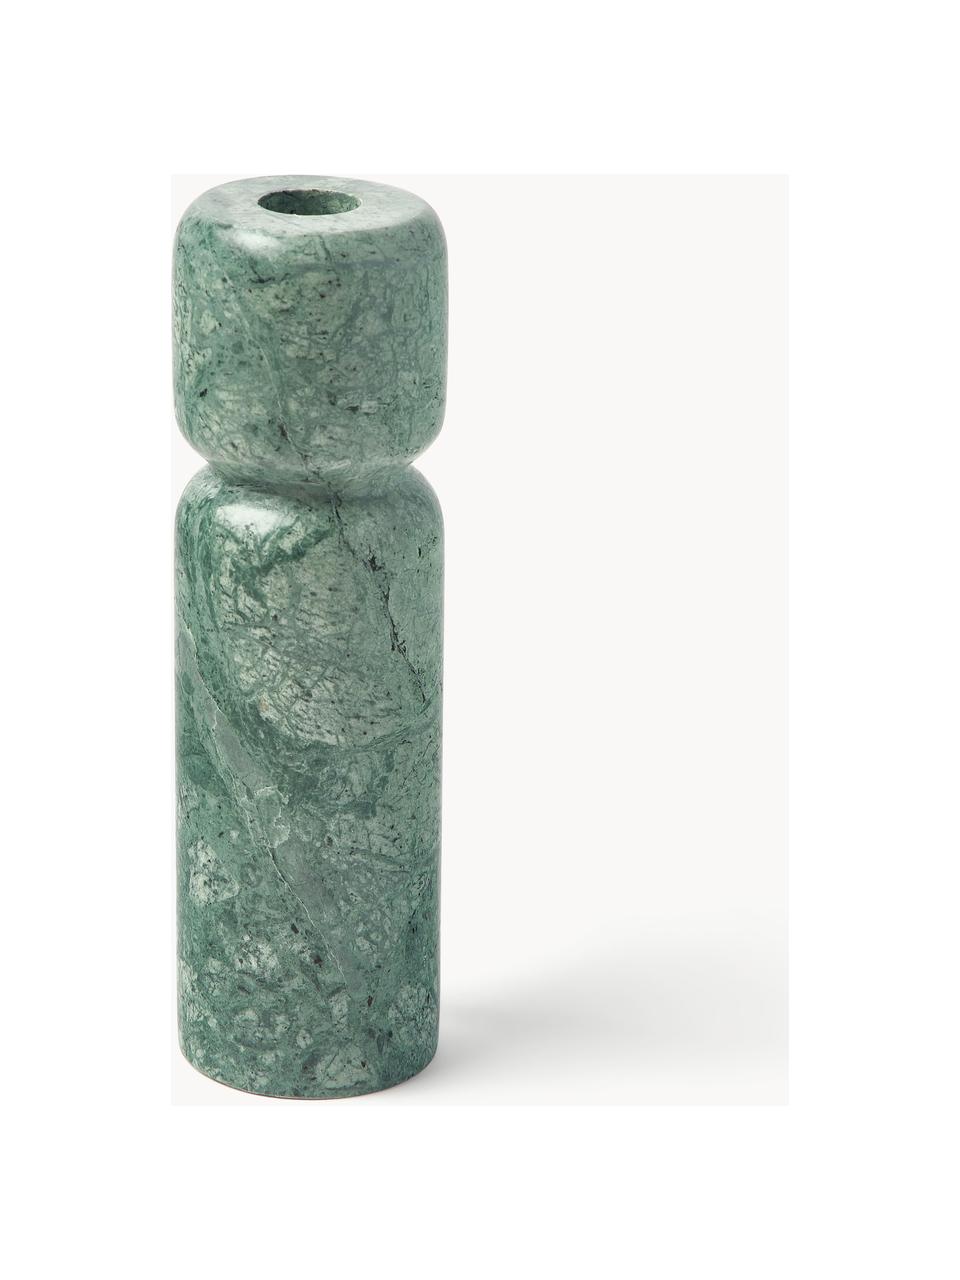 Kerzenhalter Como aus Marmor, 2er-Set, Marmor, Grün, marmoriert, Set mit verschiedenen Grössen